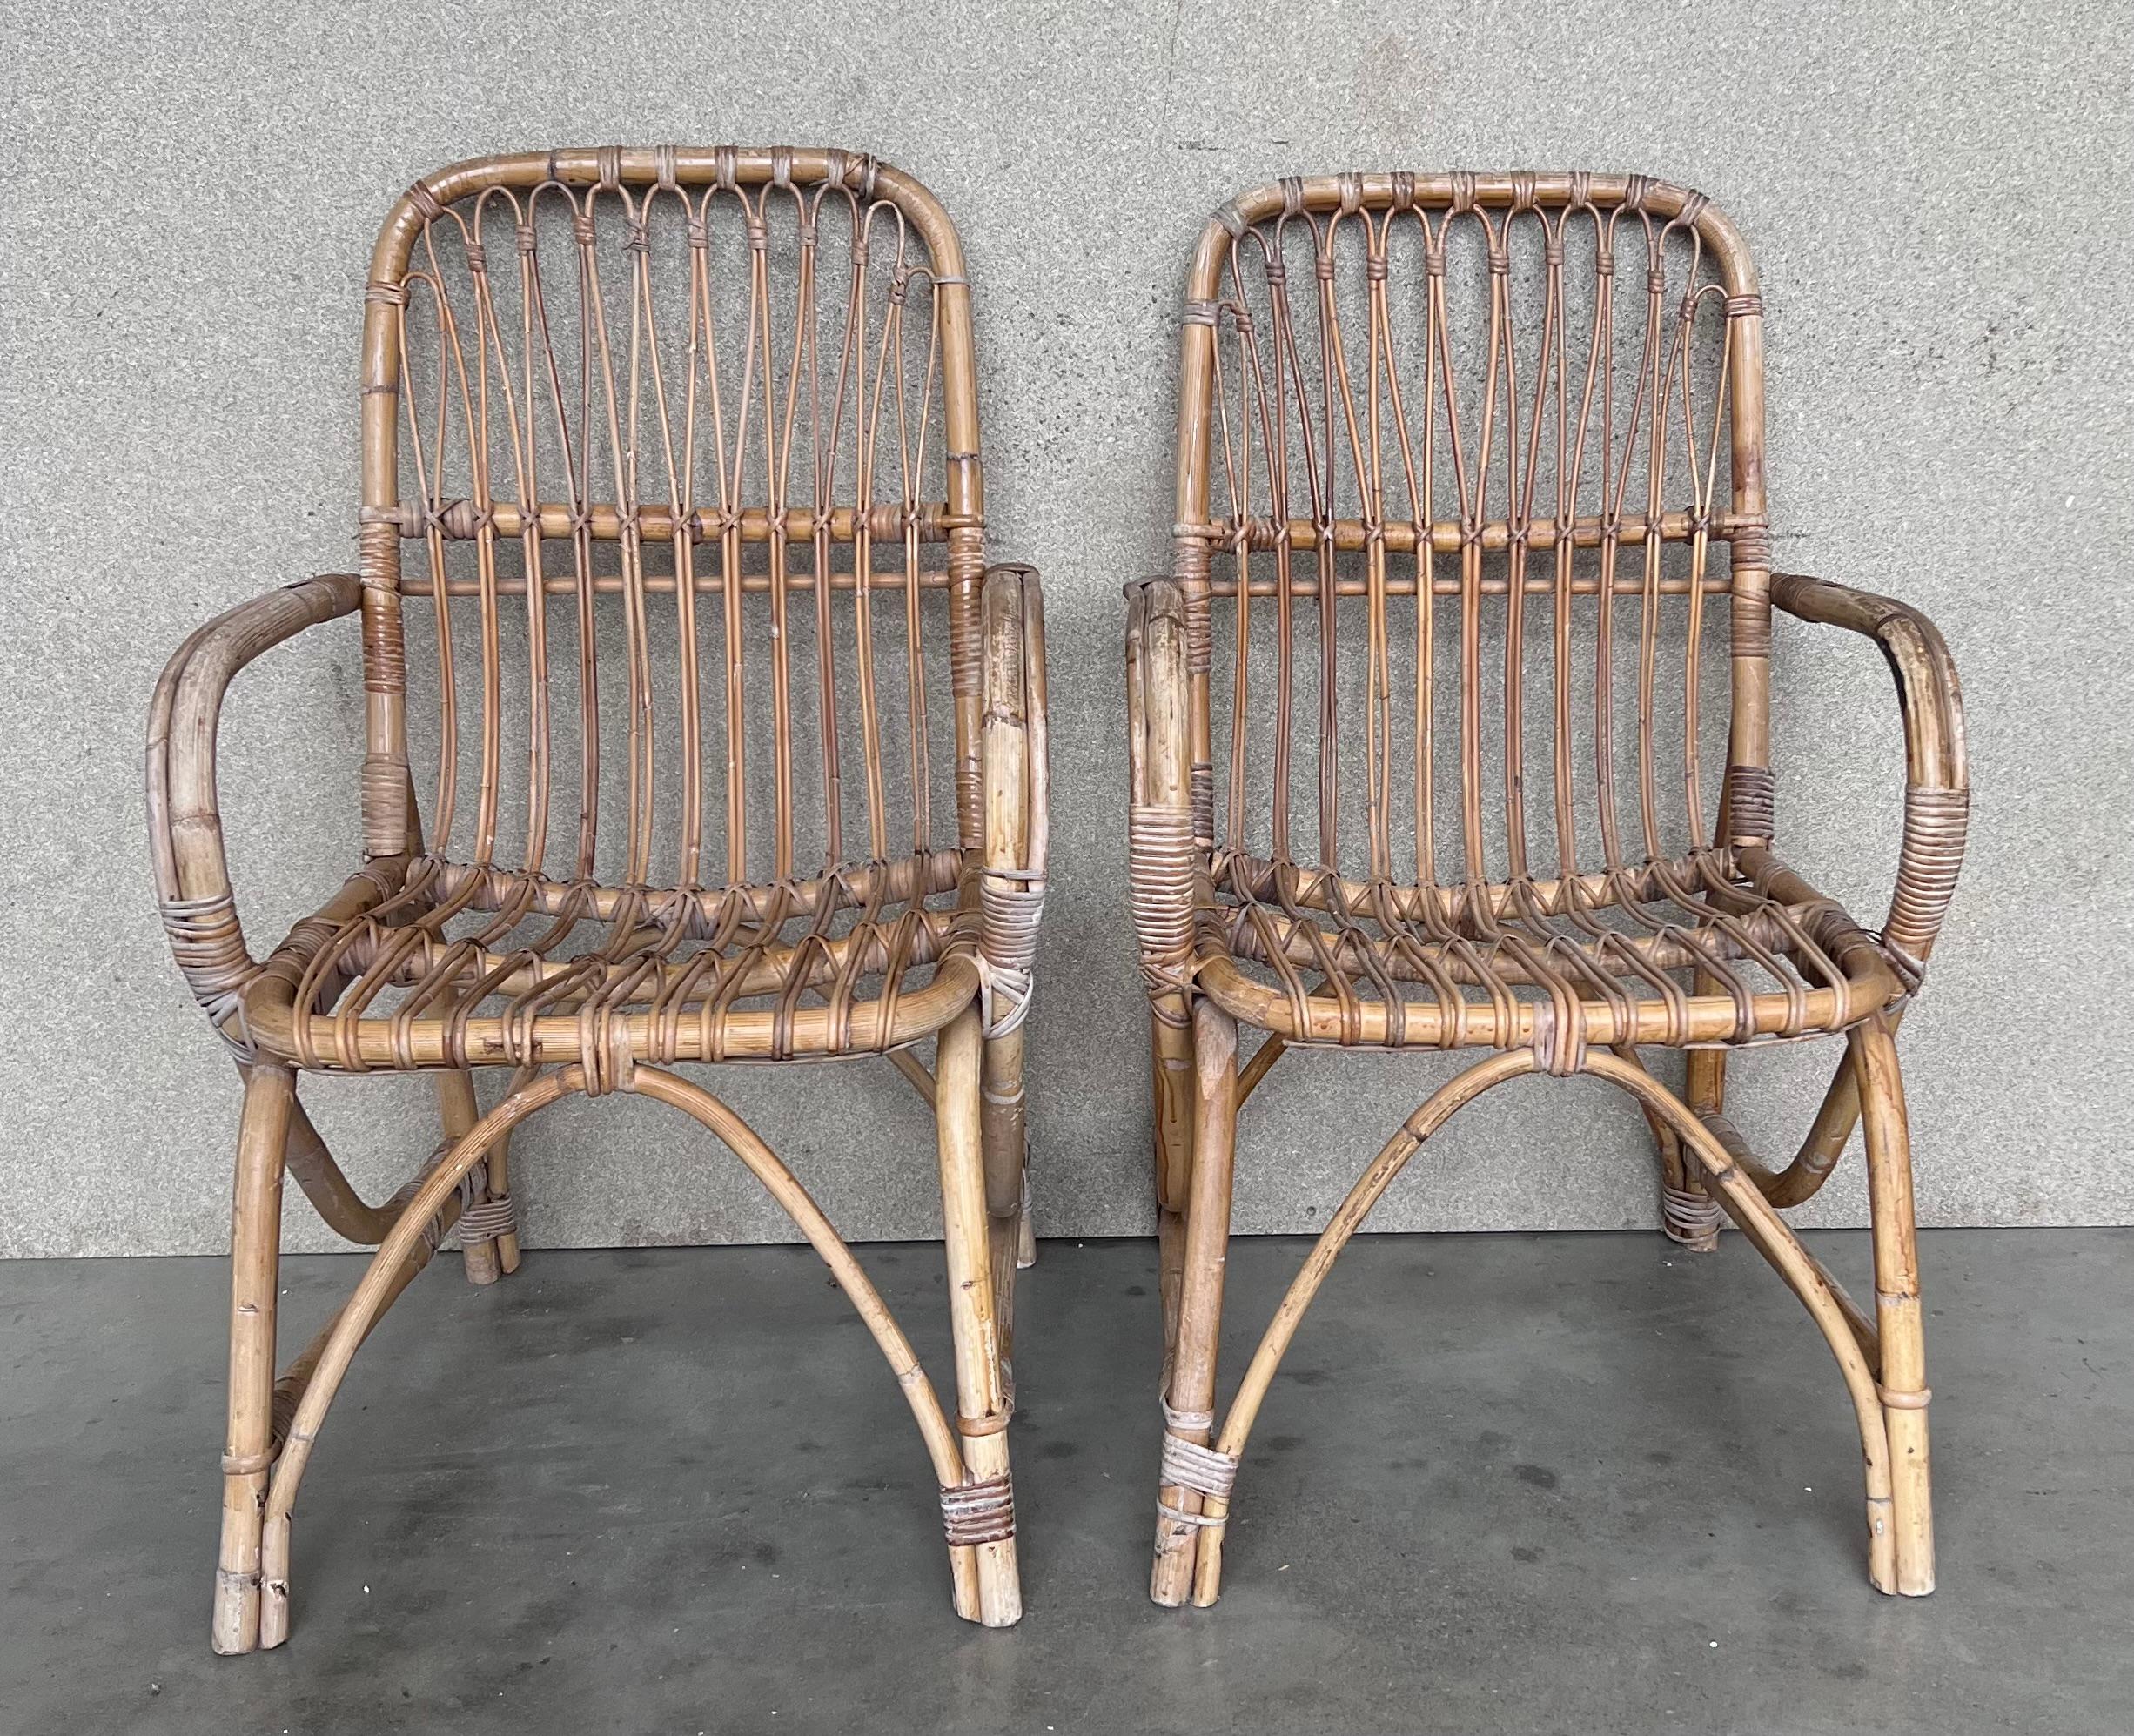 Paire de fauteuils espagnols en bambou des années 1960 avec dossier rectangulaire.
Restauré.

